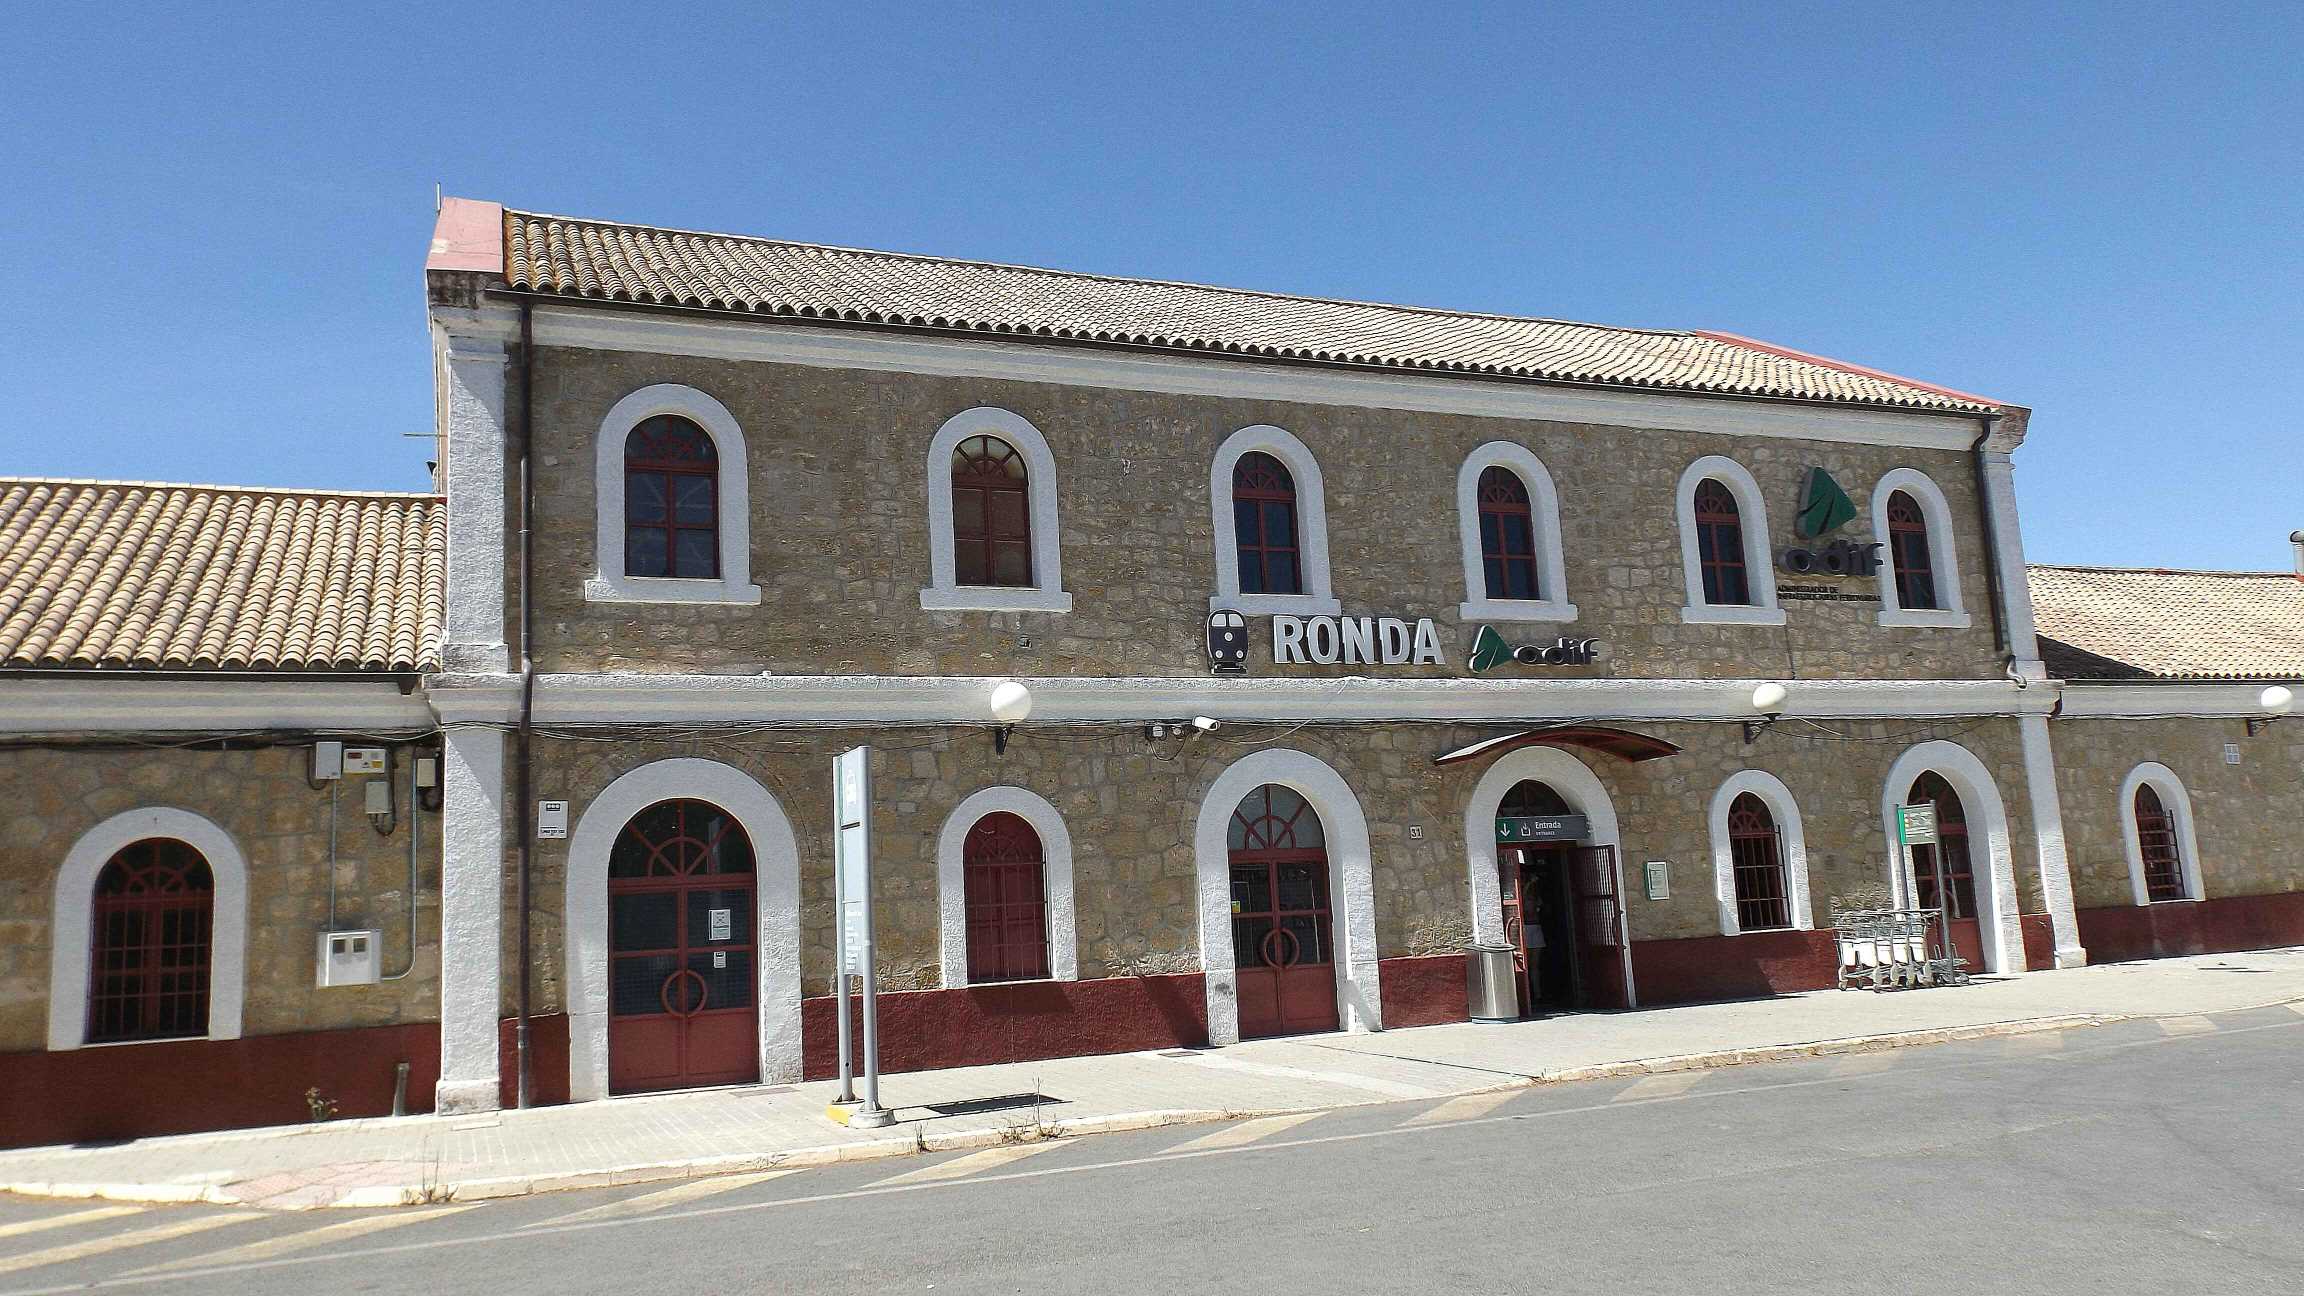 Train Station, Ronda, Spain